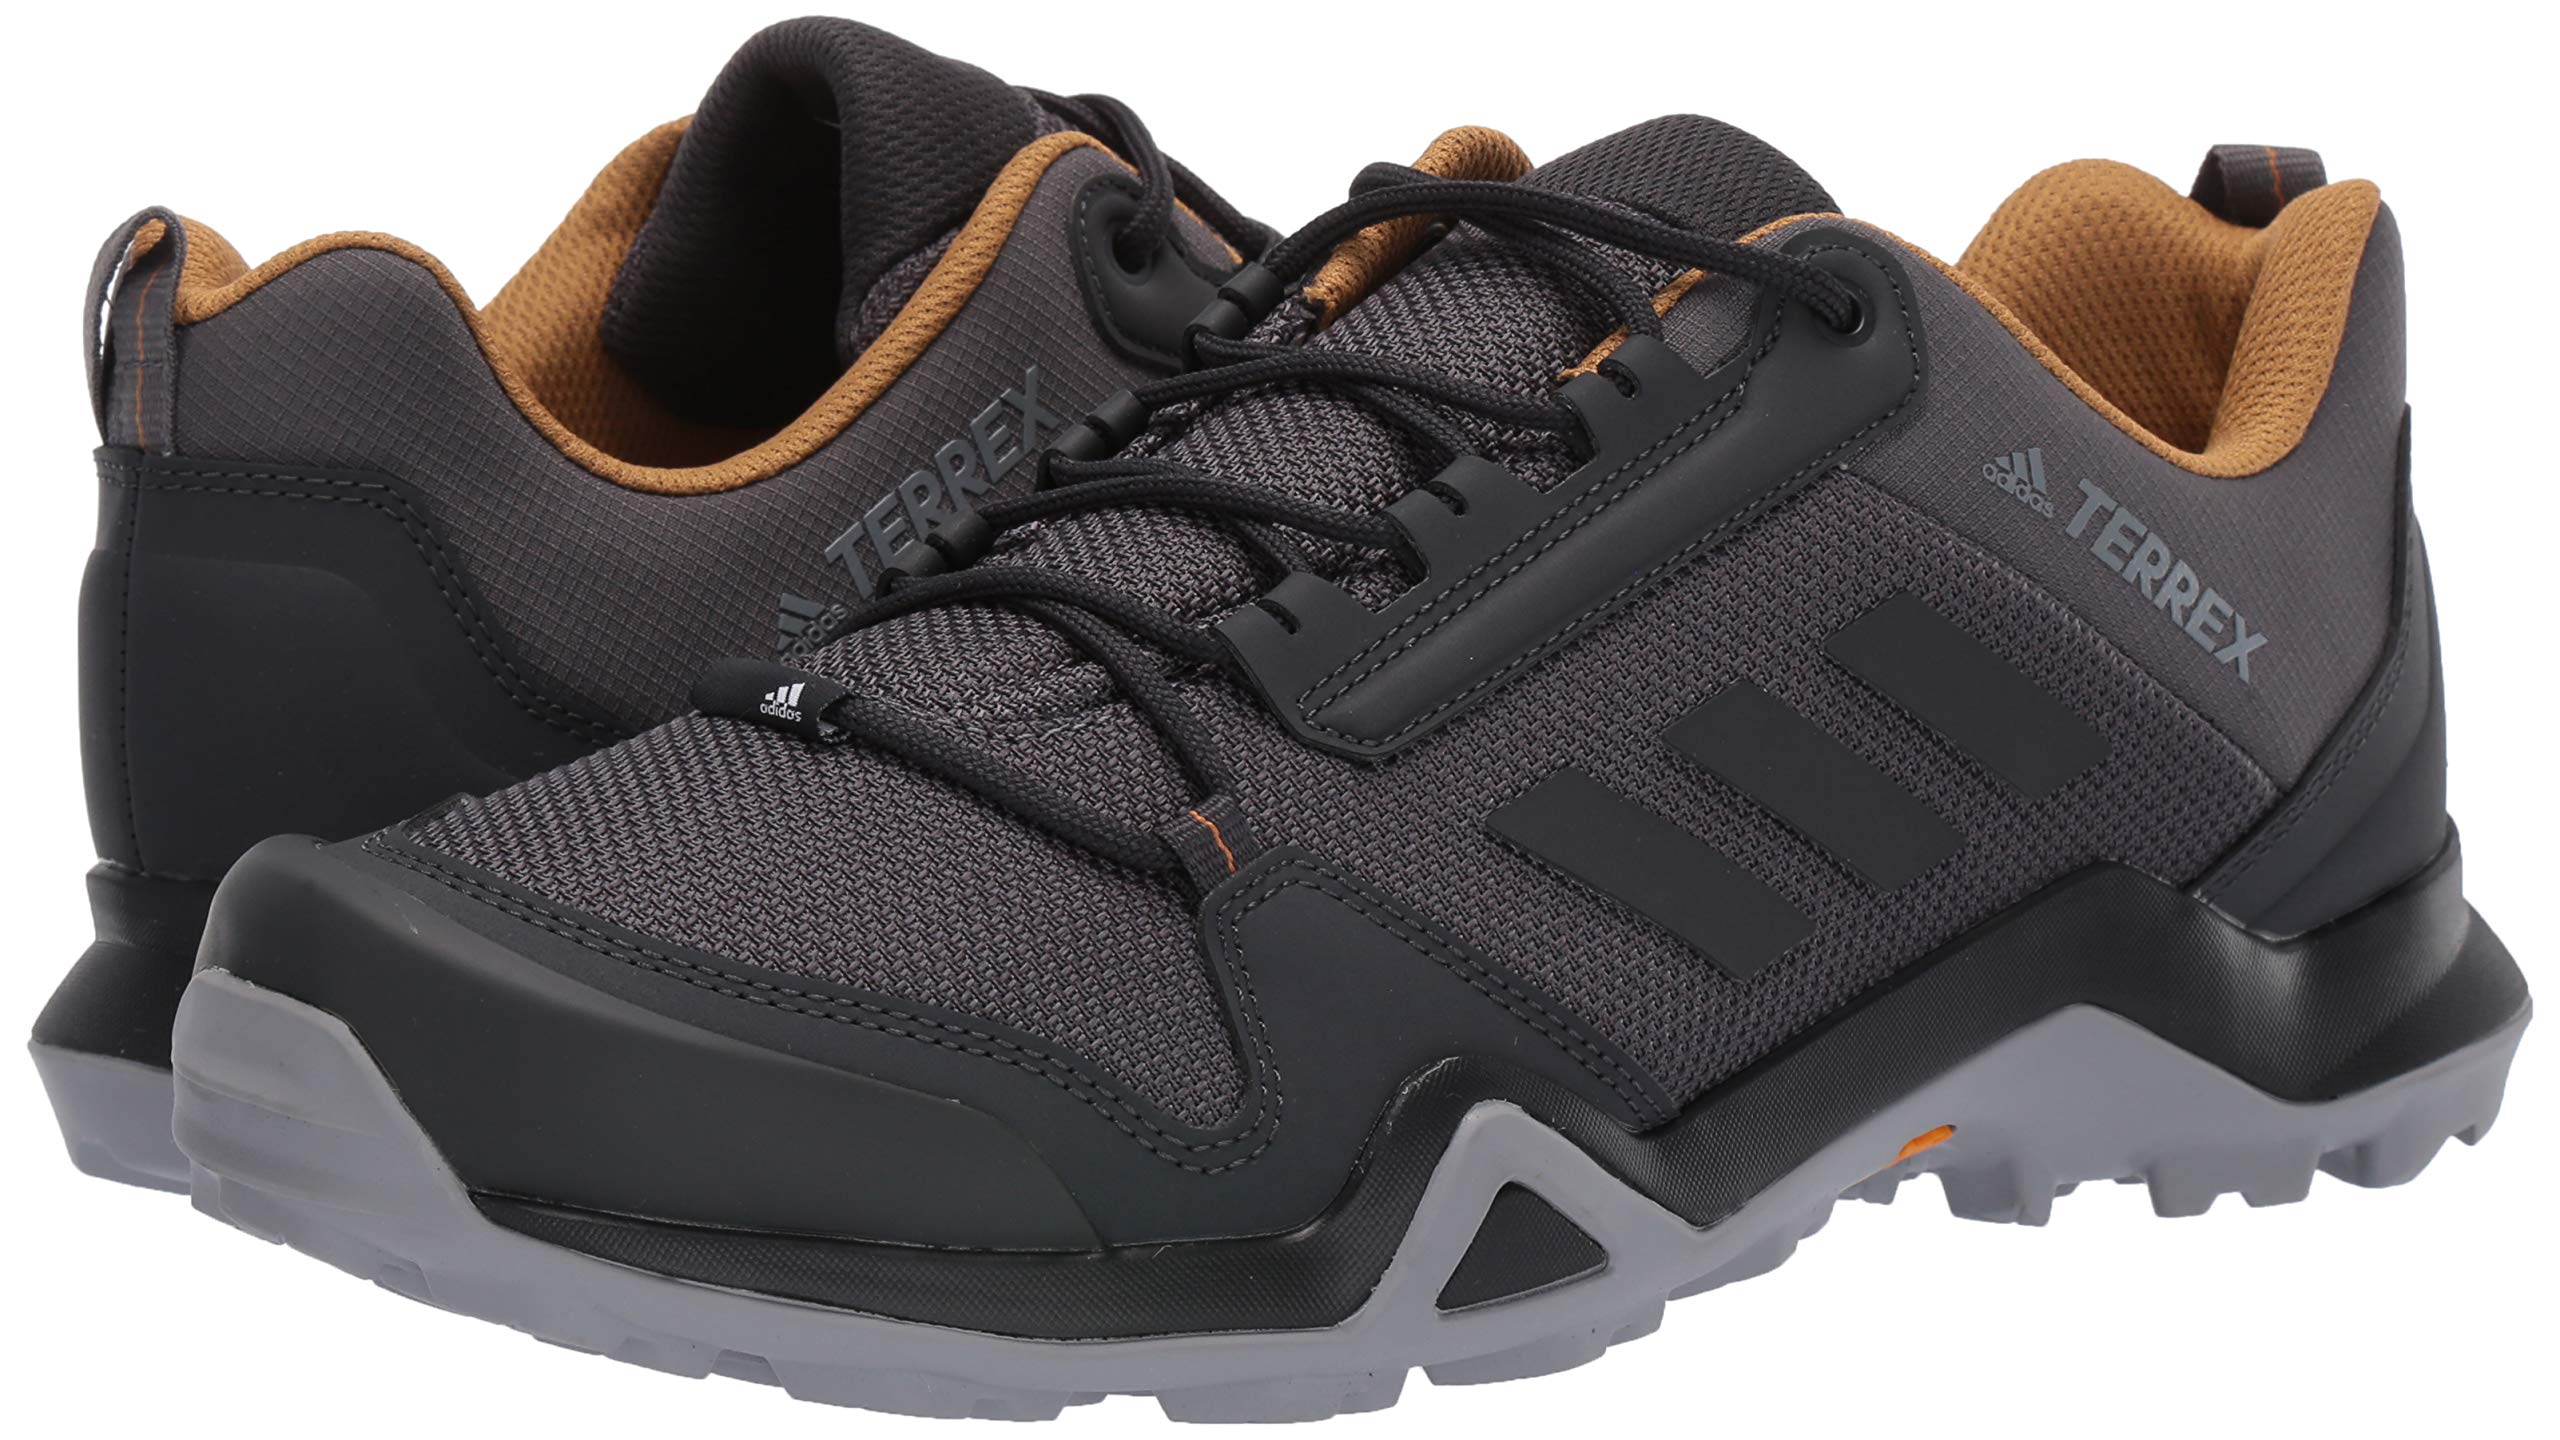 adidas Outdoor Men's Terrex Ax3 Hiking Boot